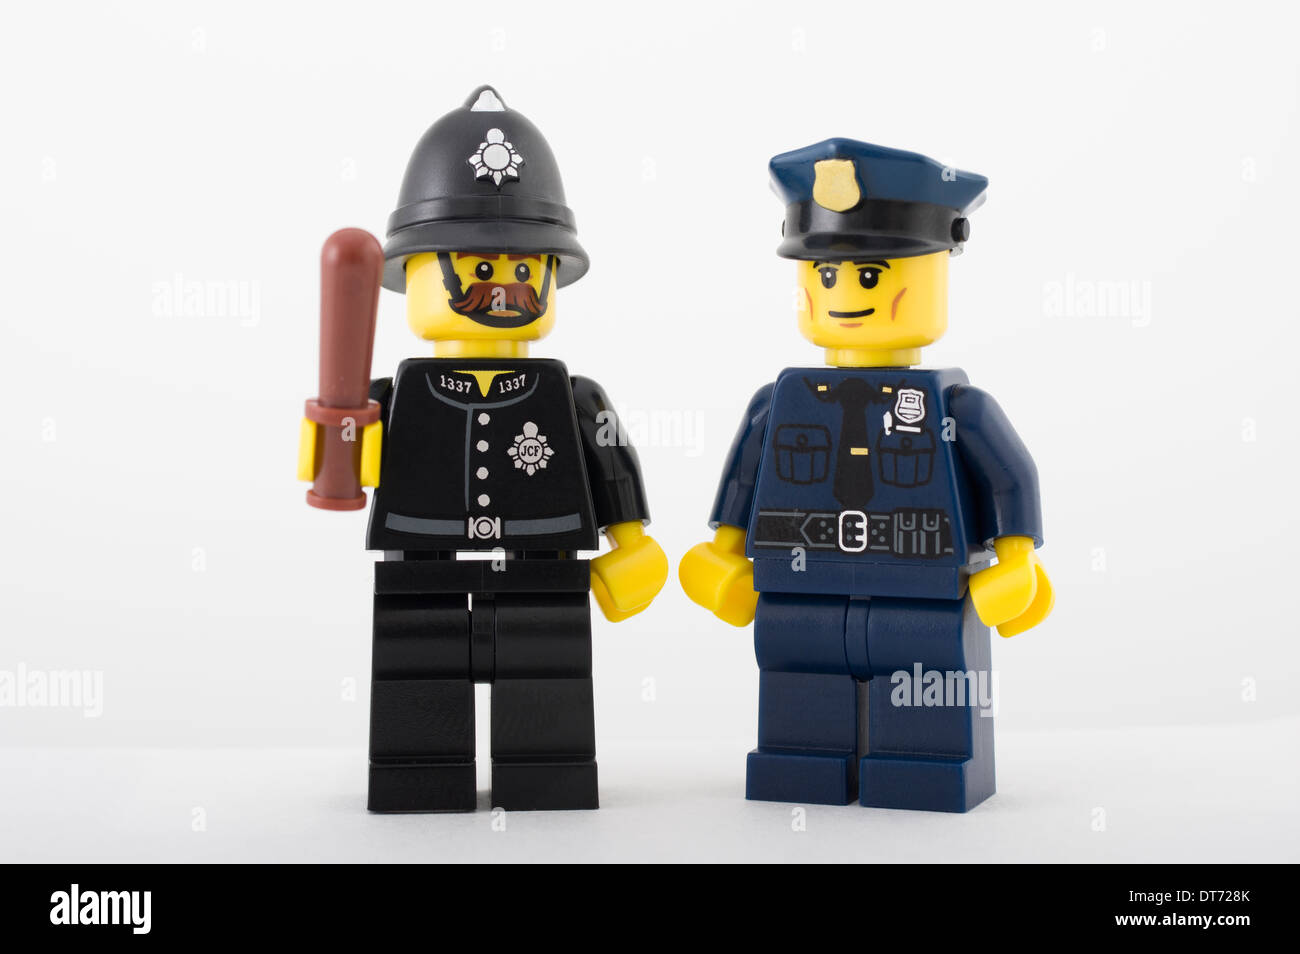 Lego 5 x Polizisten Polizei Figuren Minifiguren Police Officer